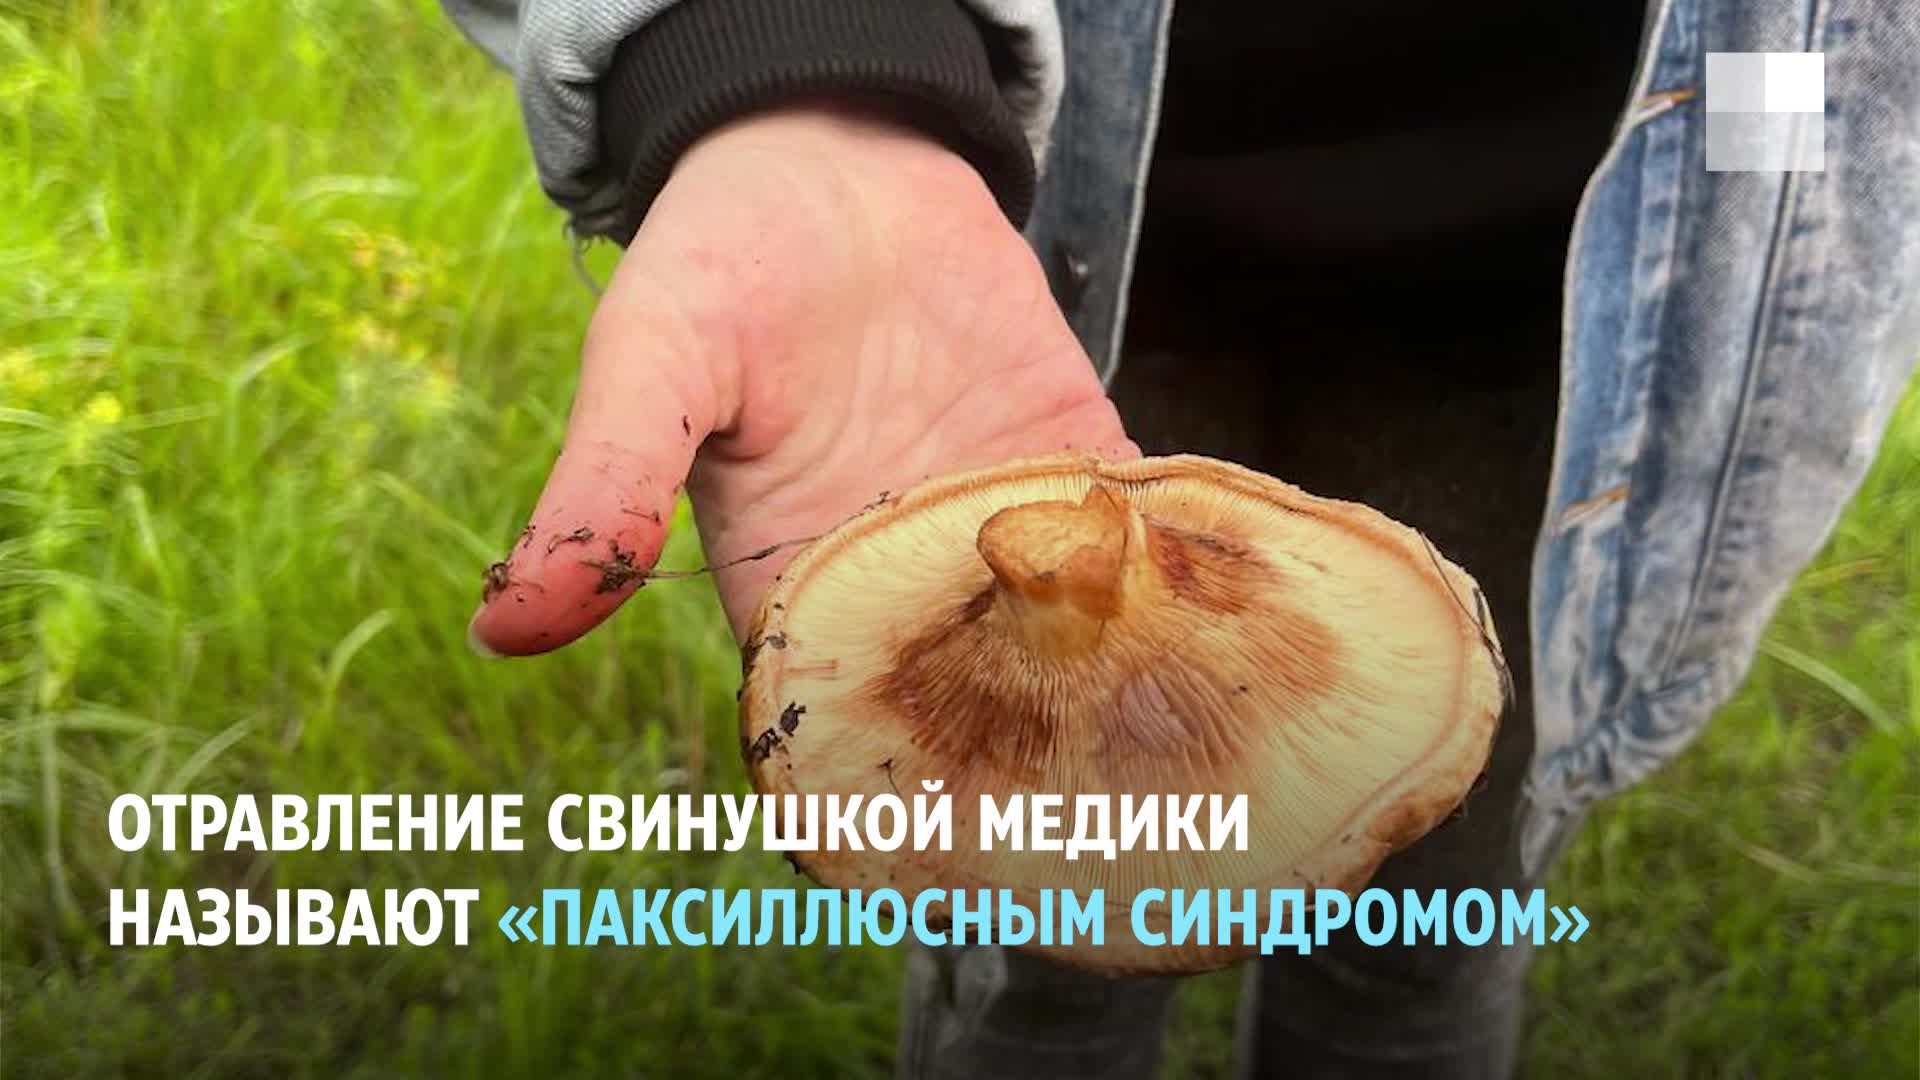 Жители Лиды нашли в лесу большой гриб «медвежье ухо». Шляпка — около 40 сантиметров в диаметре